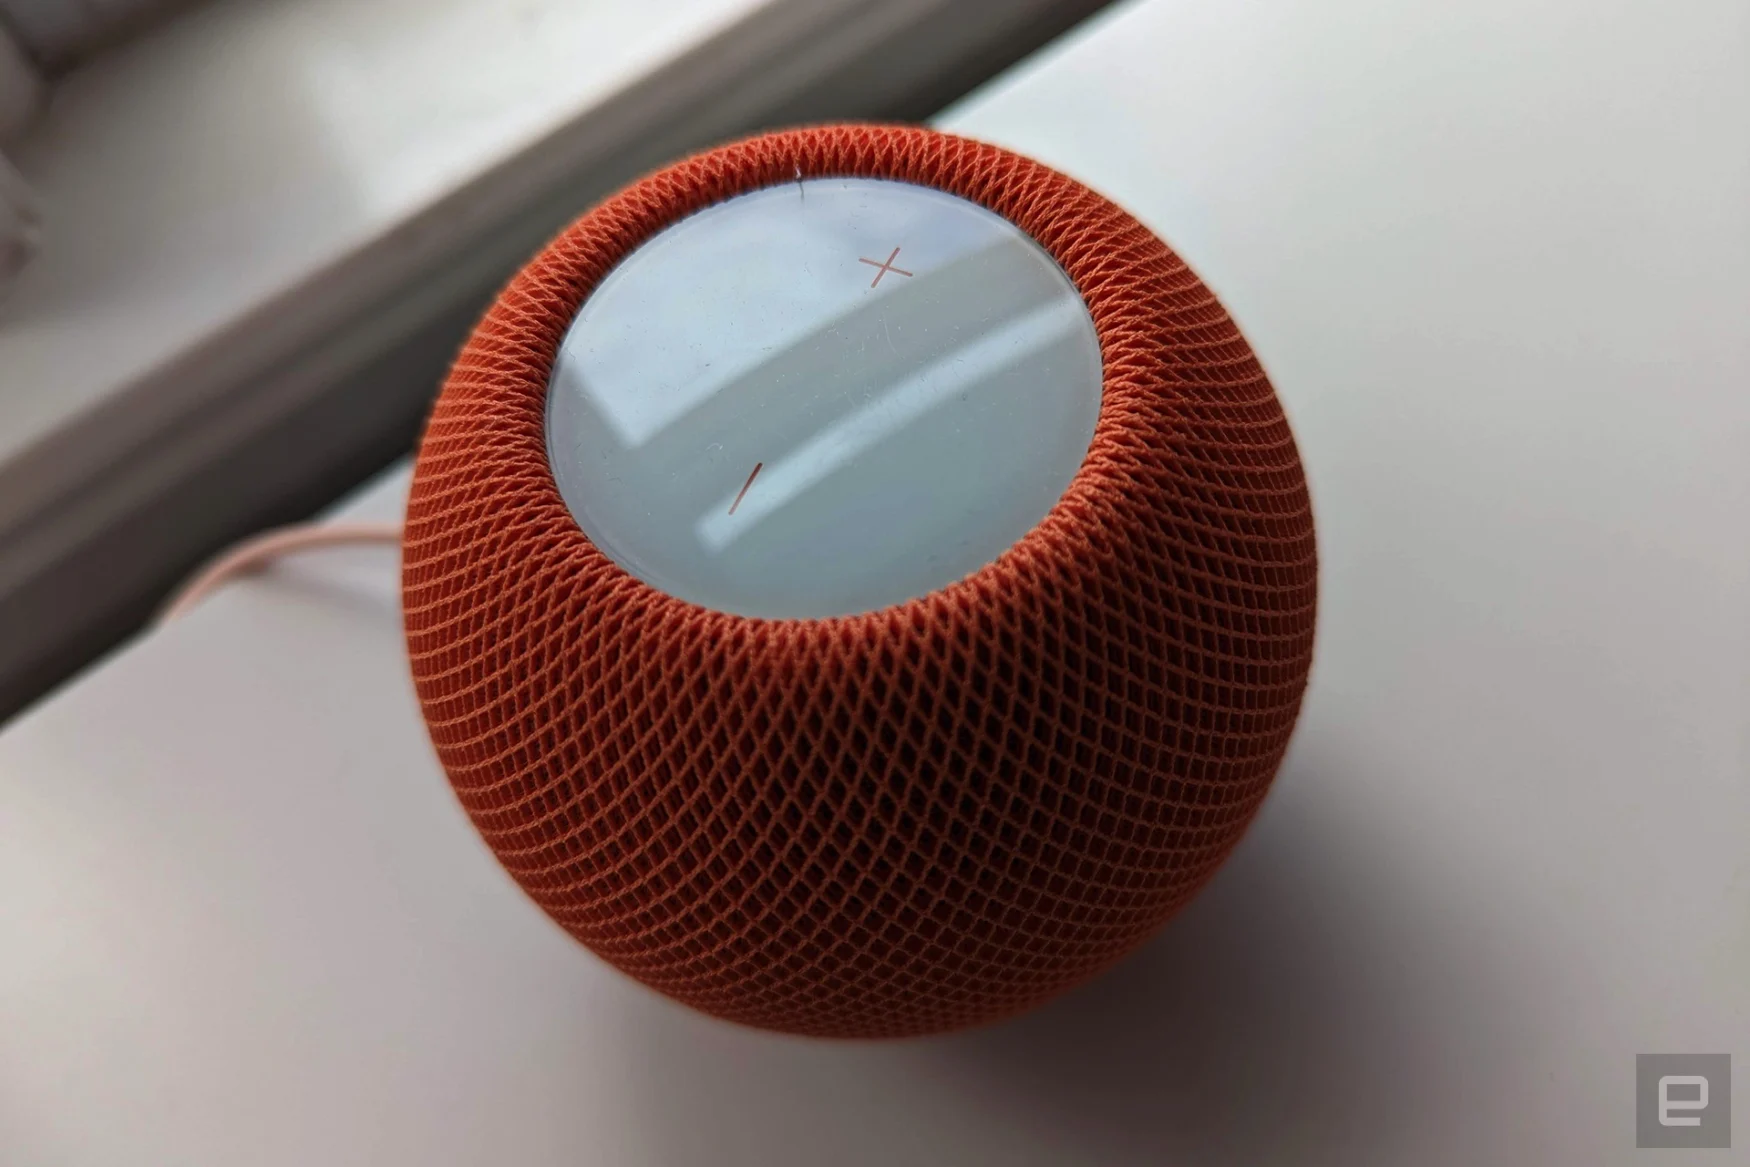 Apple HomePod mini in orange